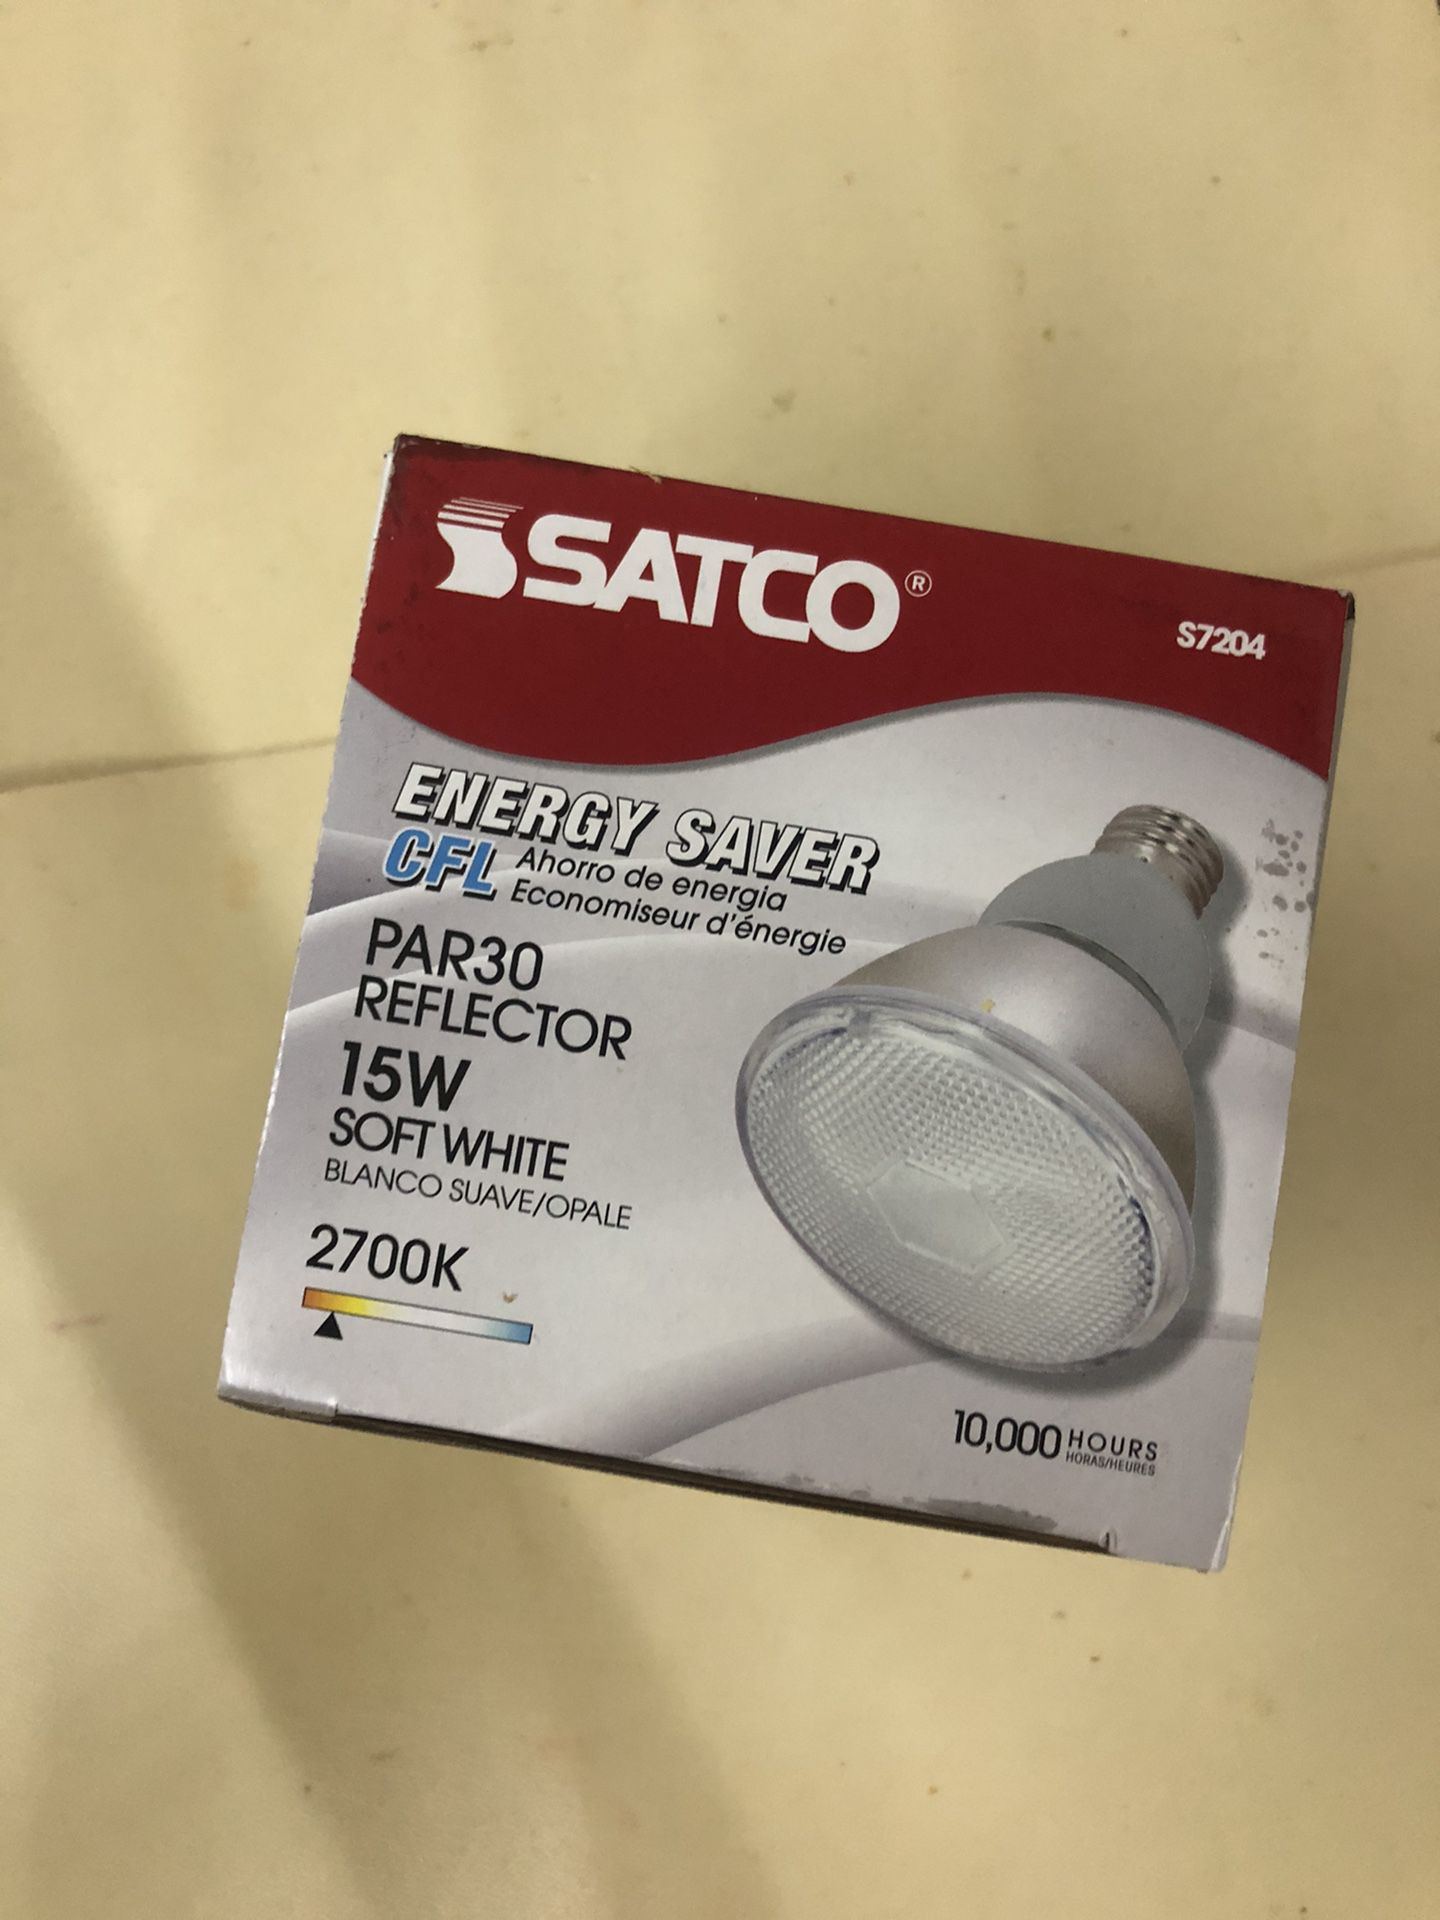 Satco- Energy saber- Ahorró de energía